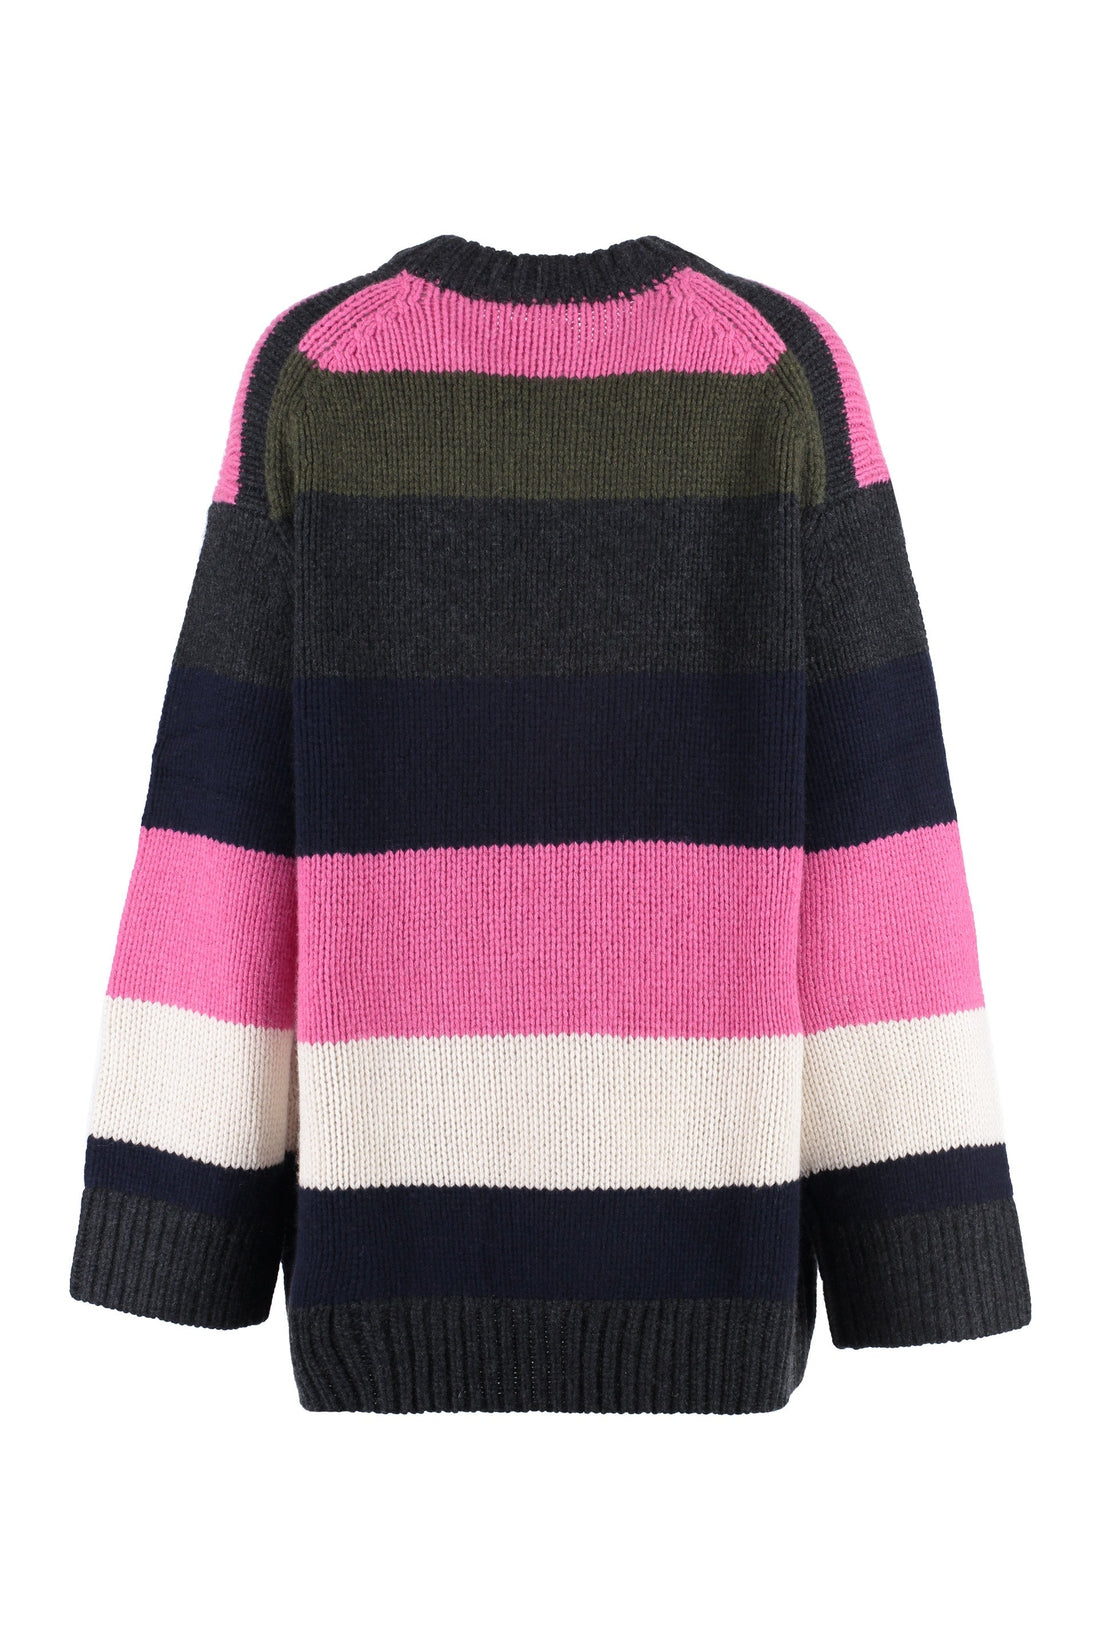 Khaite-OUTLET-SALE-Crew-neck cashmere sweater-ARCHIVIST